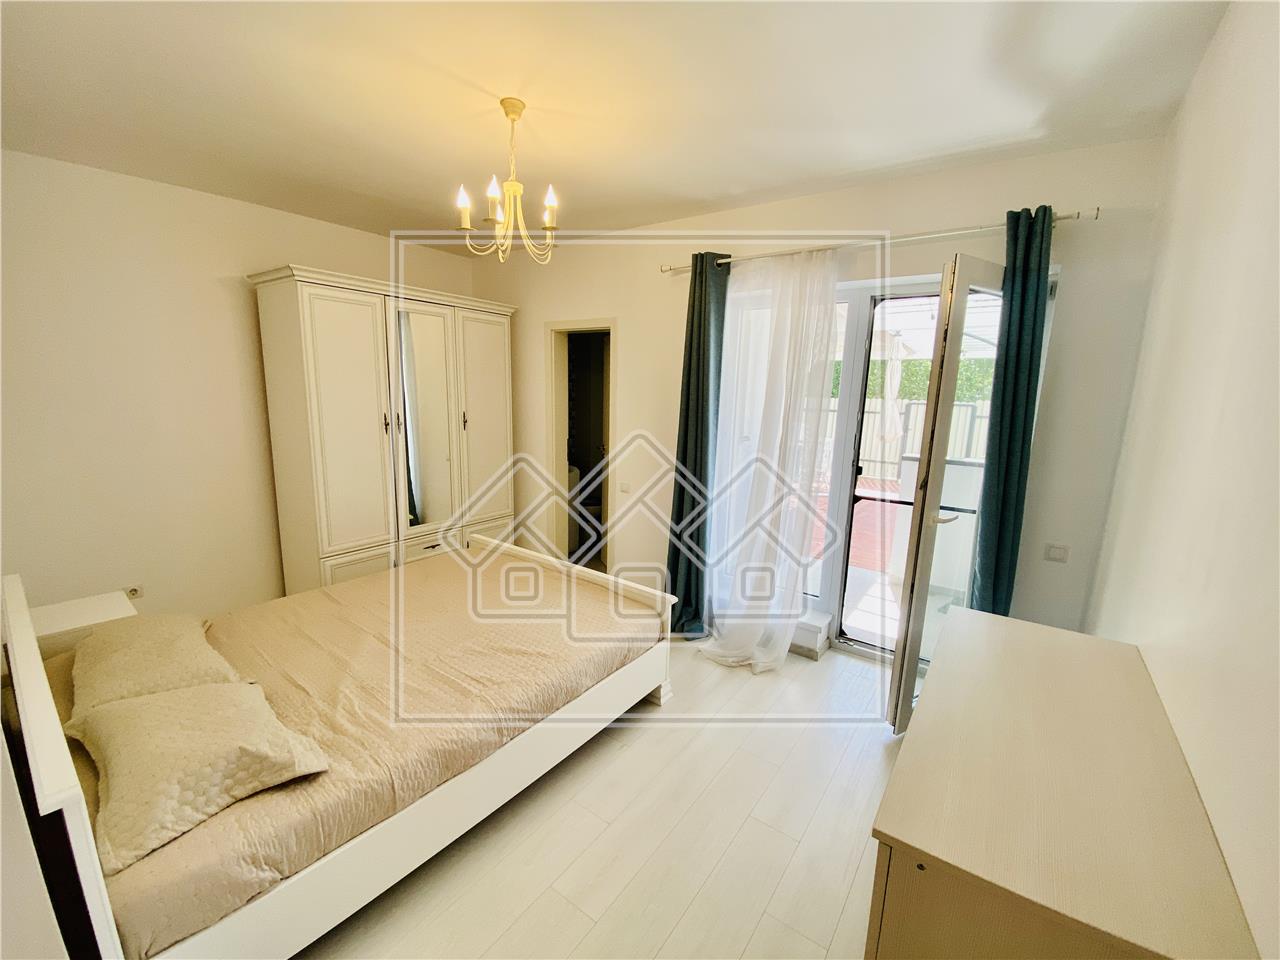 Apartament de vanzare in Sibiu - 3 camere,balcon si gradina - Turnisor